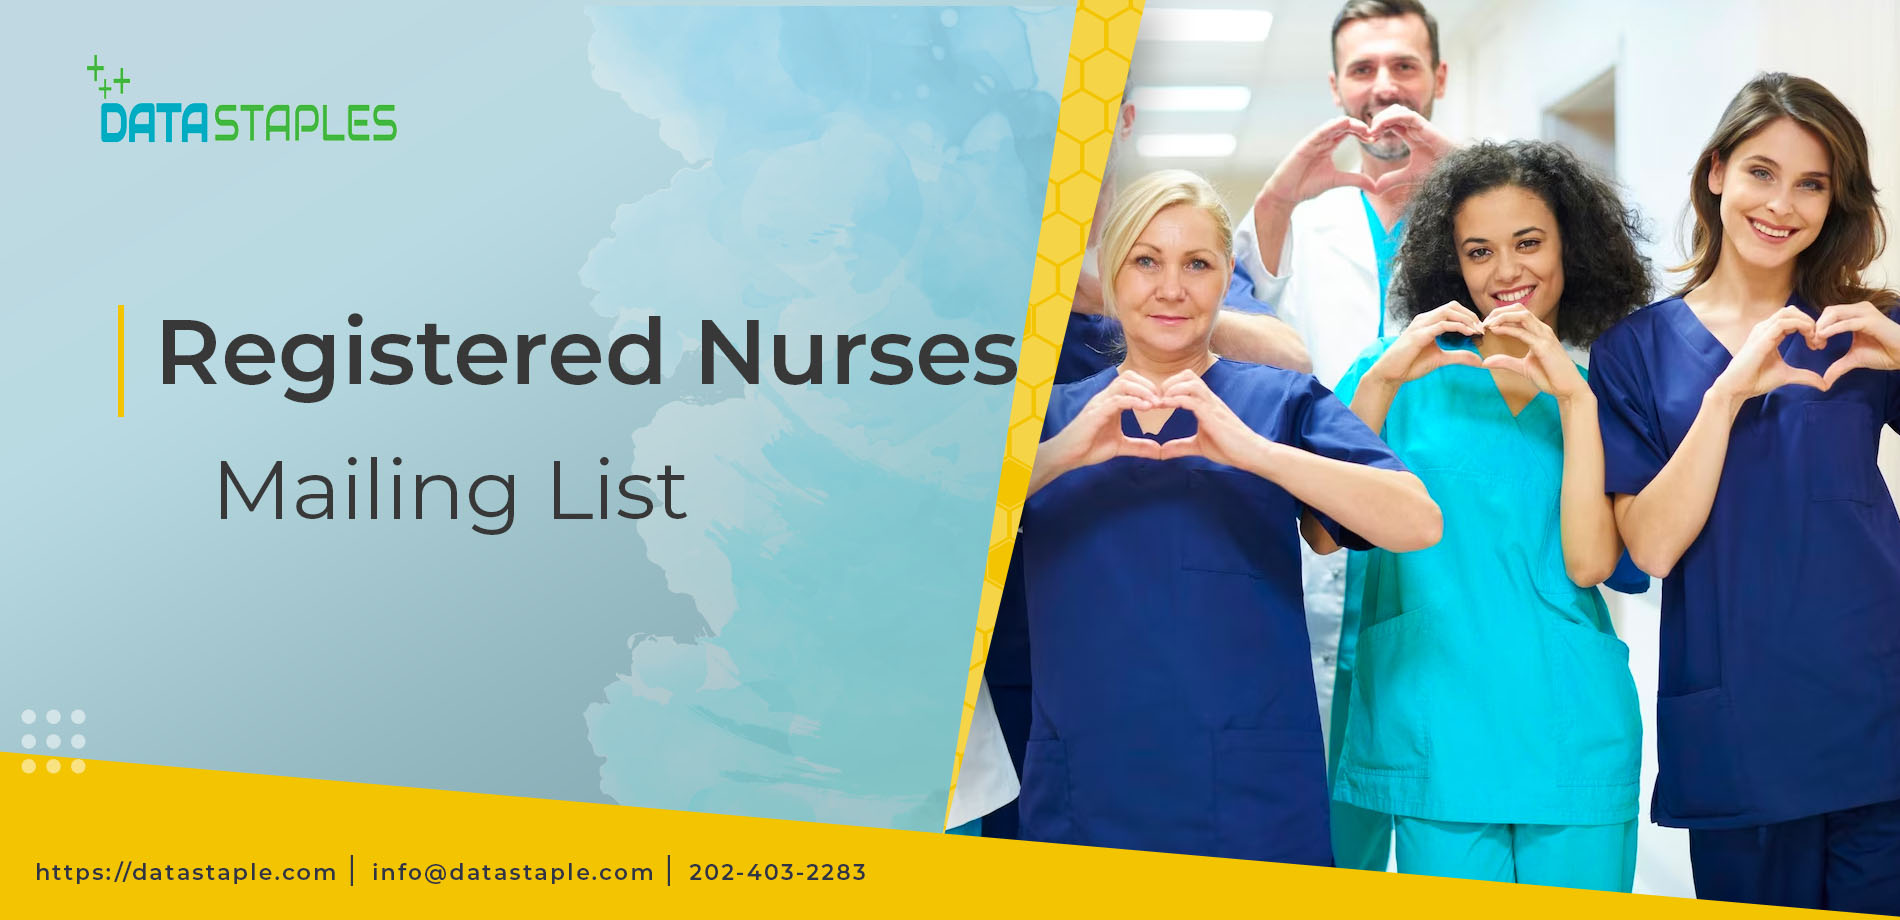 Registered Nurses Mailing List | DataStaples